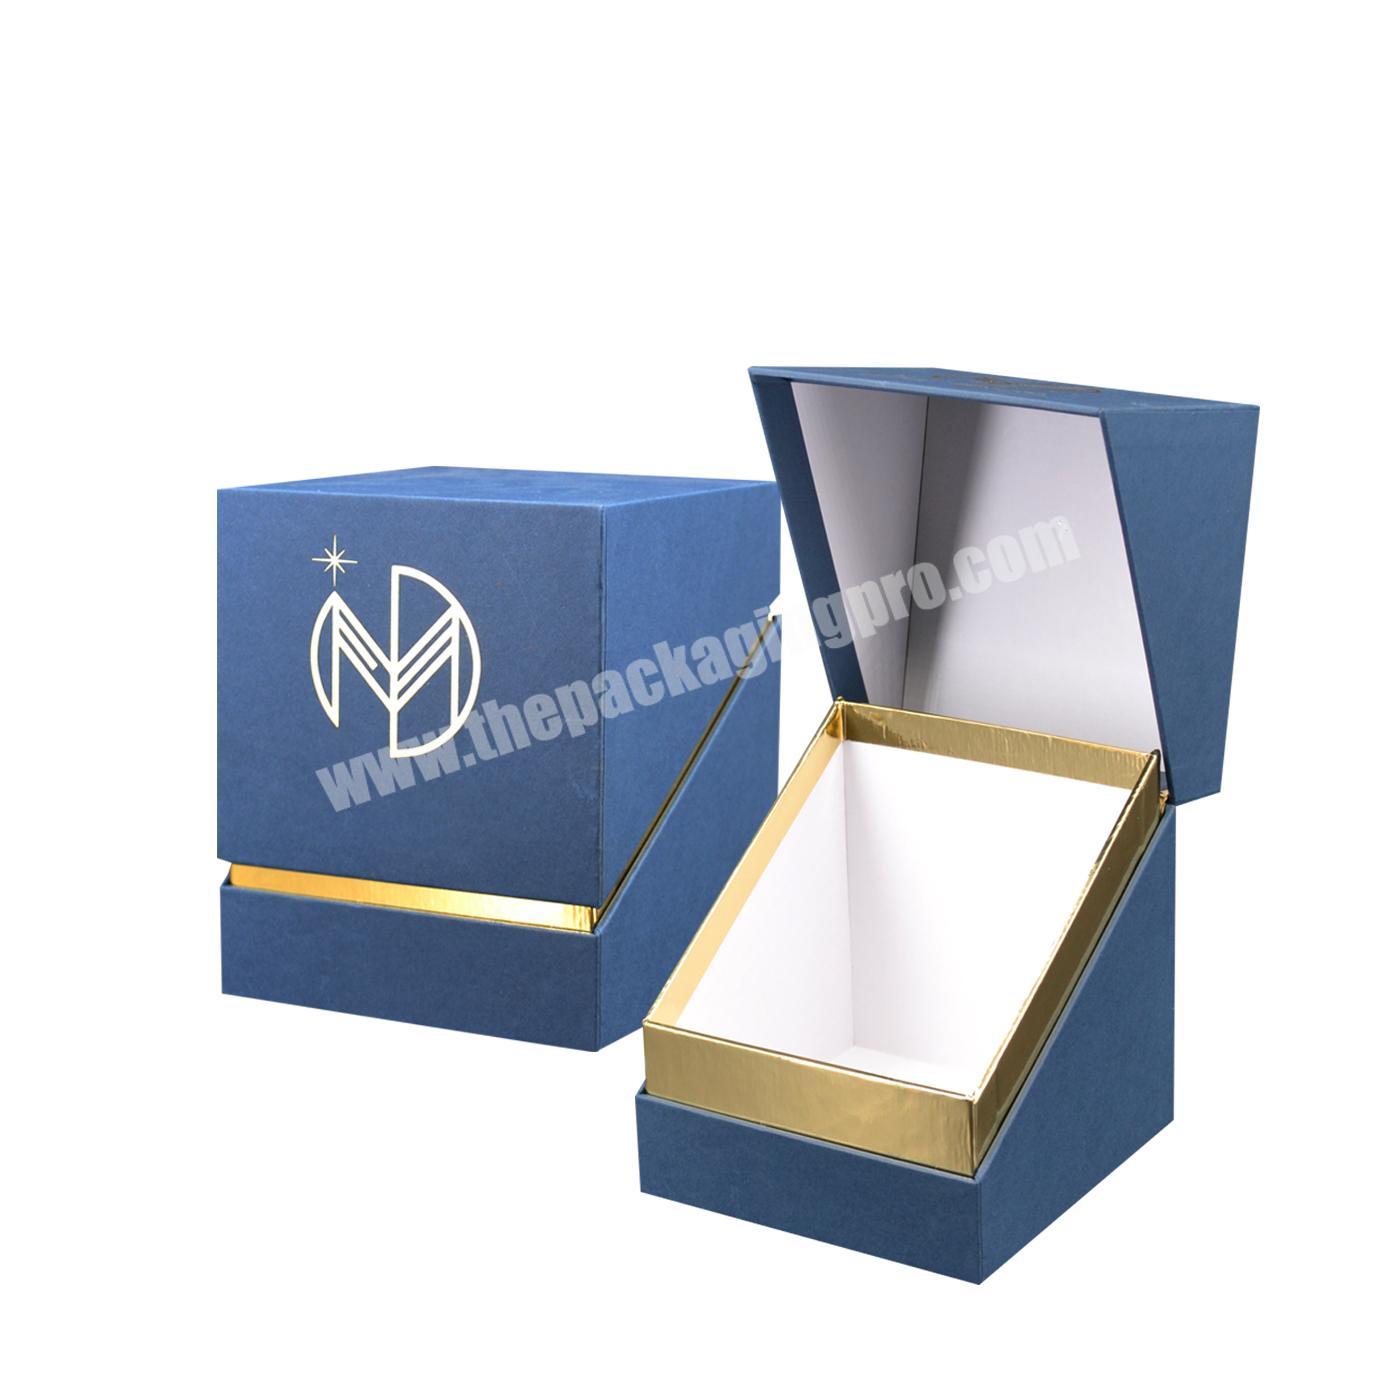 Luxury custom logo mug set gift box small cardboard mini candle gift boxes wedding square candle gift box set